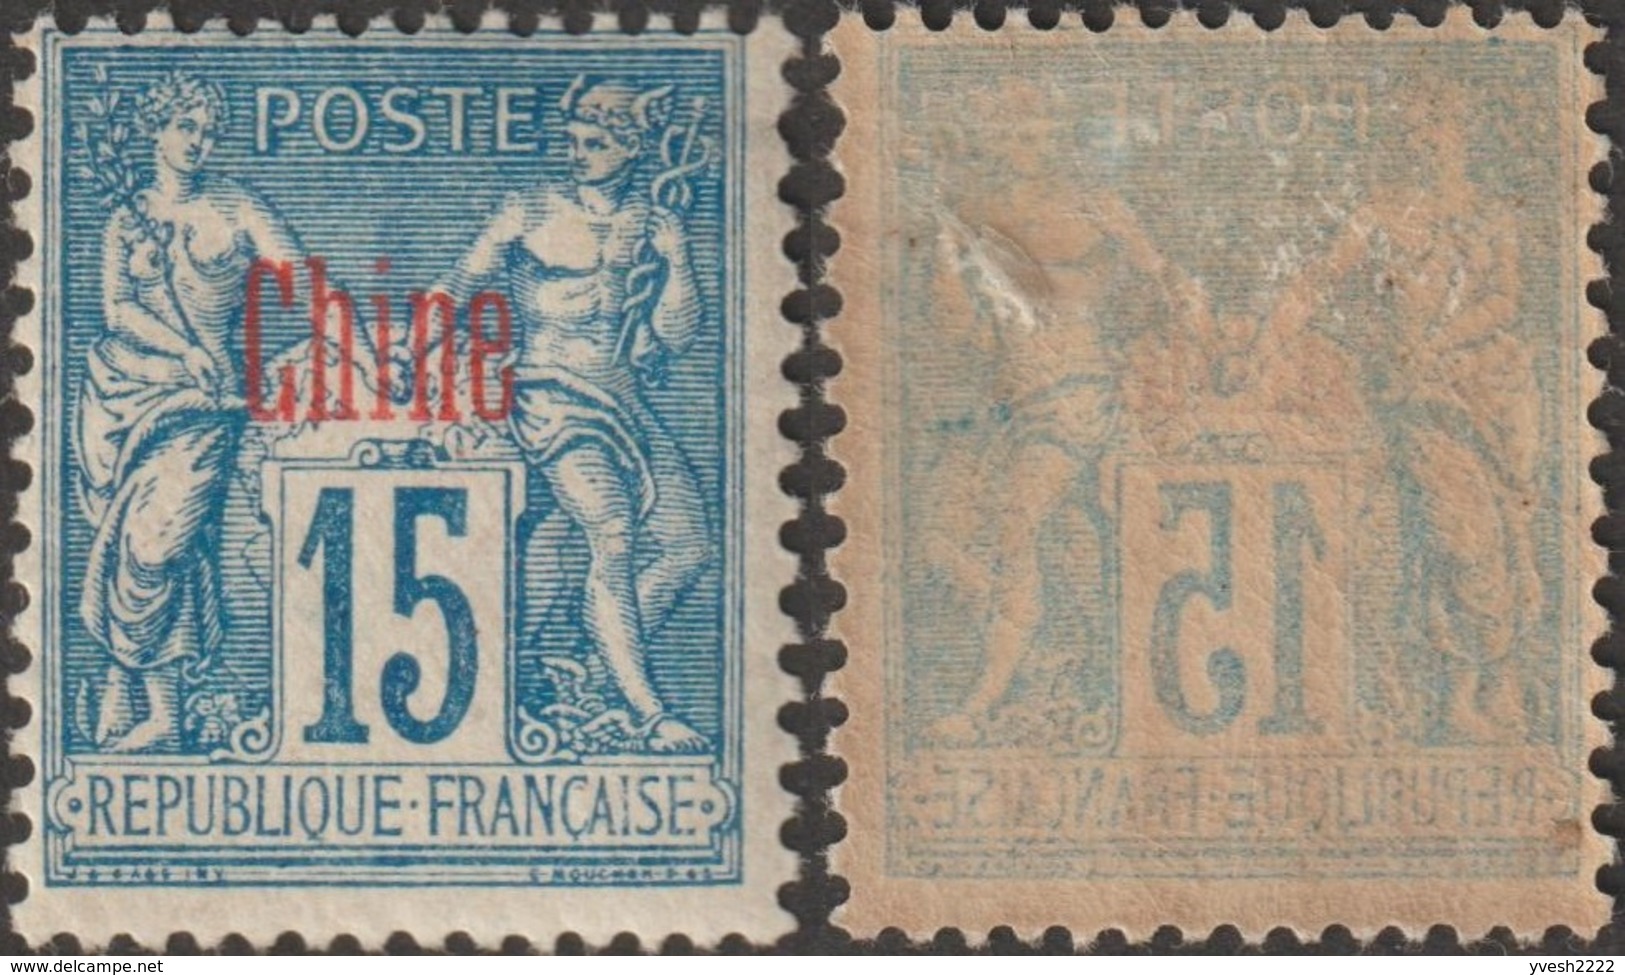 Chine Française 1894 Y&T 6b. 15 C Sage Sur Papier Non Quadrillé (erreur). Neuf, Charnière Très Fine. Superbe Et Rare - Nuovi